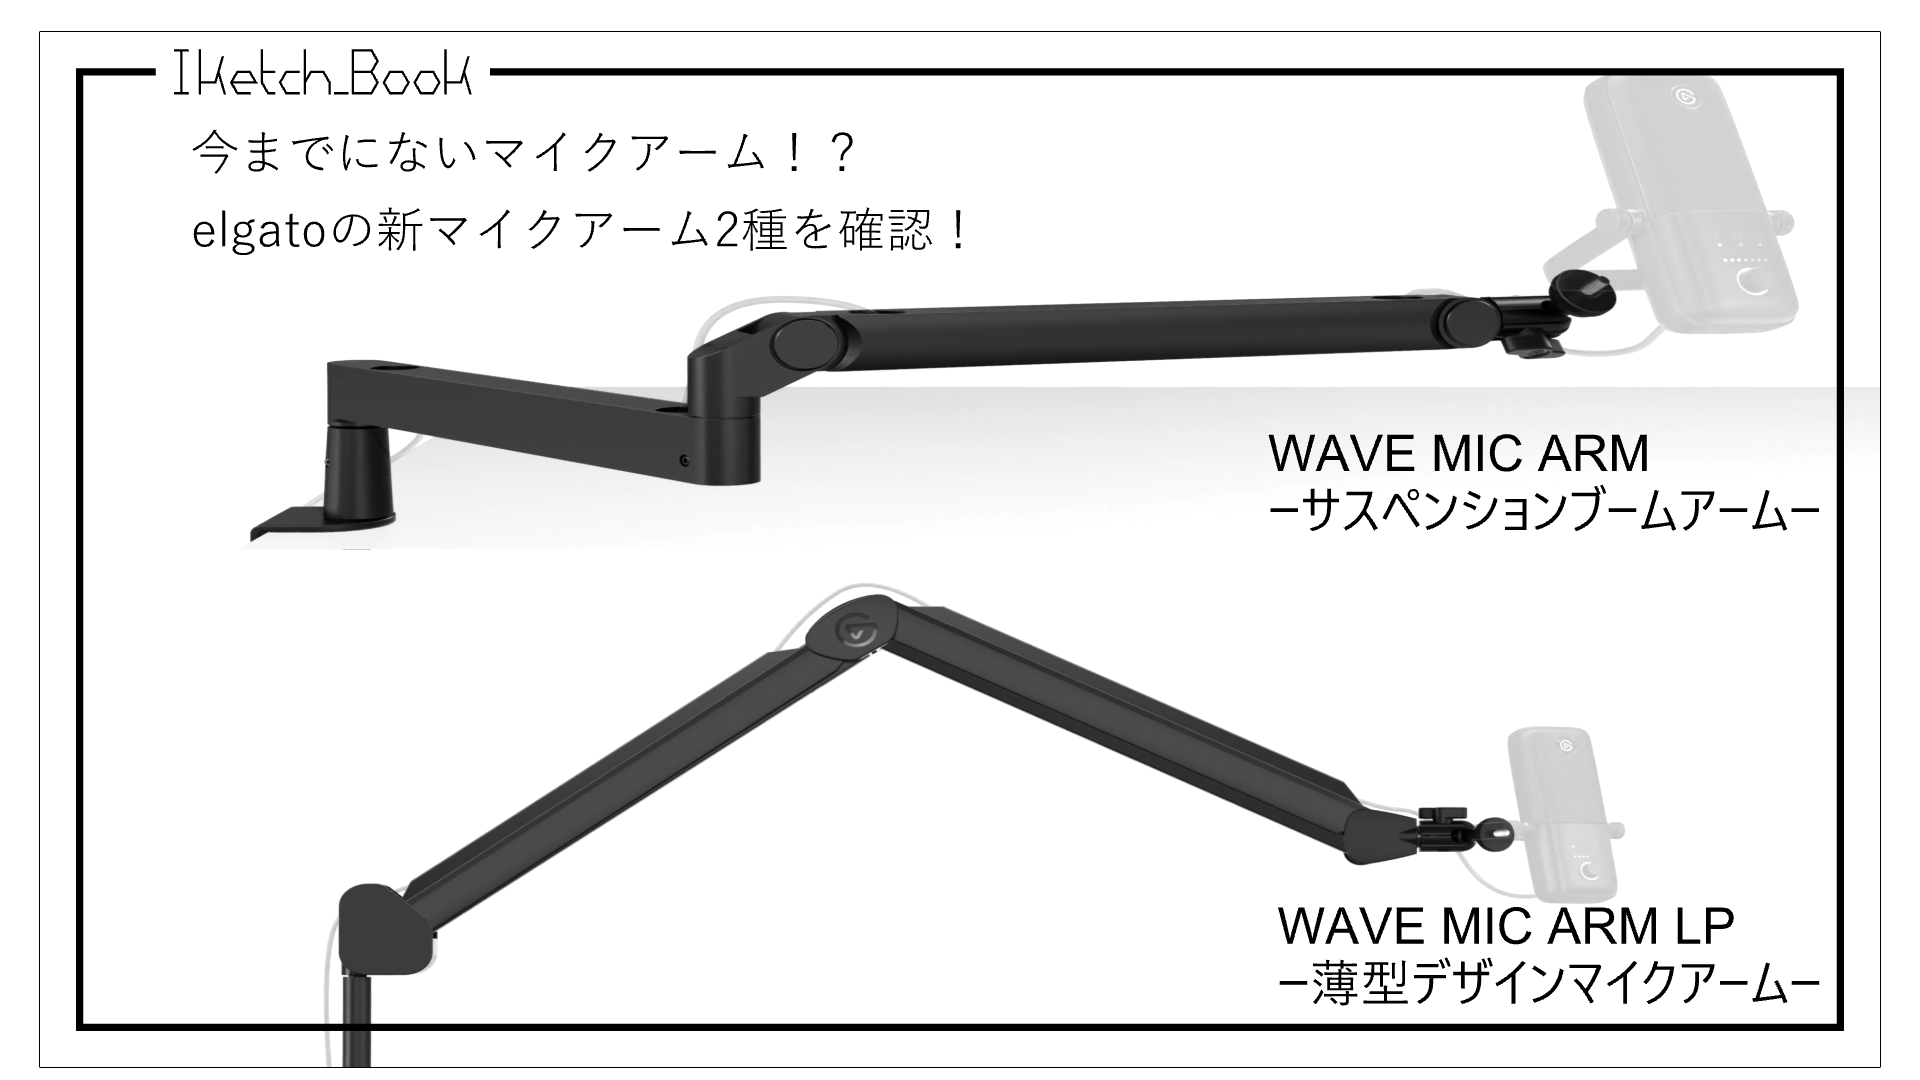 マイク用サスペンションブームアーム Elgato Wave Mic Arm 日本語